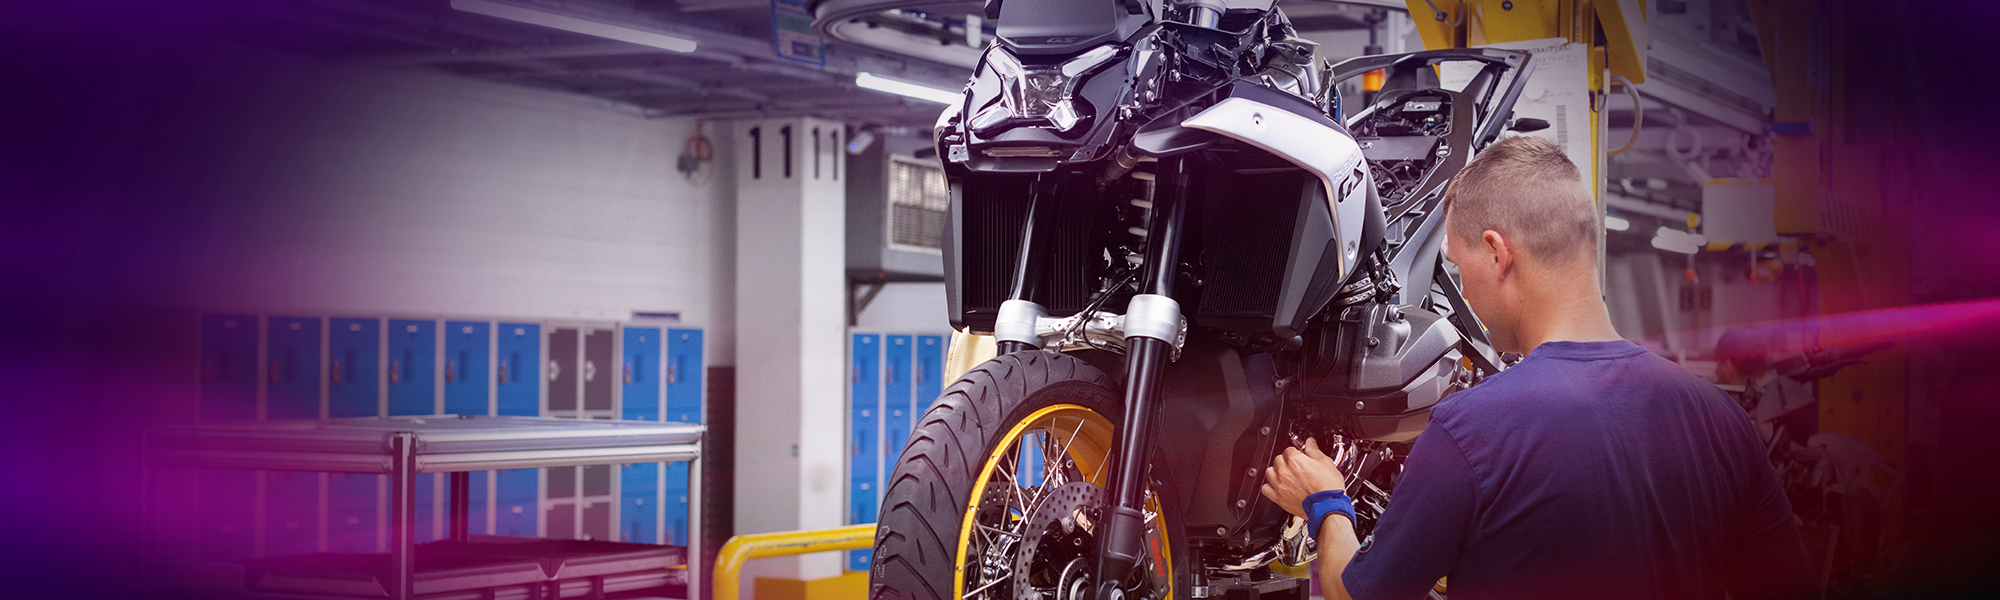 BMW Group Mitarbeiter arbeitet an einem Motorrad